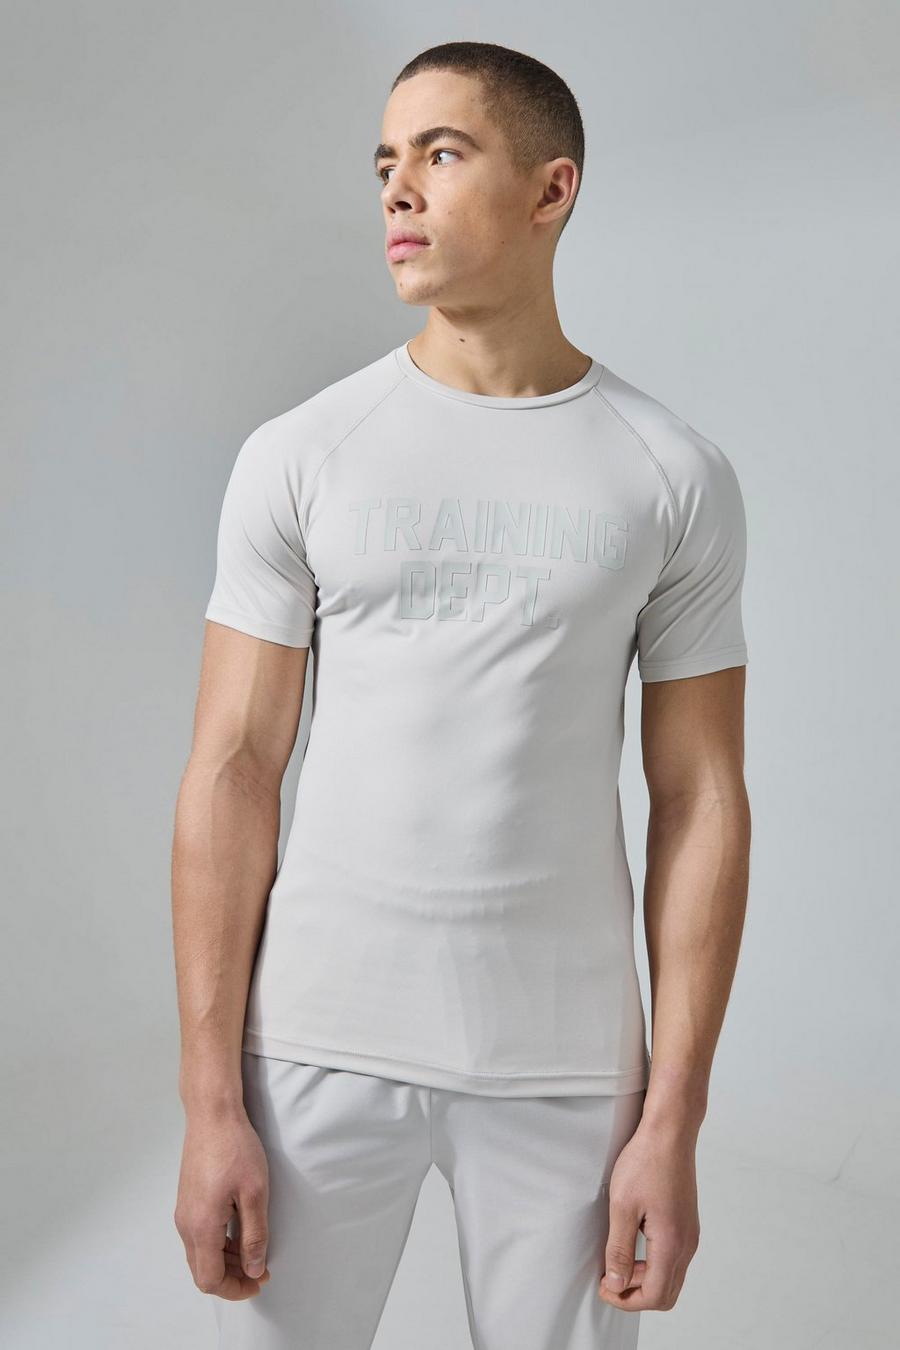 Camiseta Active ajustada al músculo con estampado Training Dept, Light grey